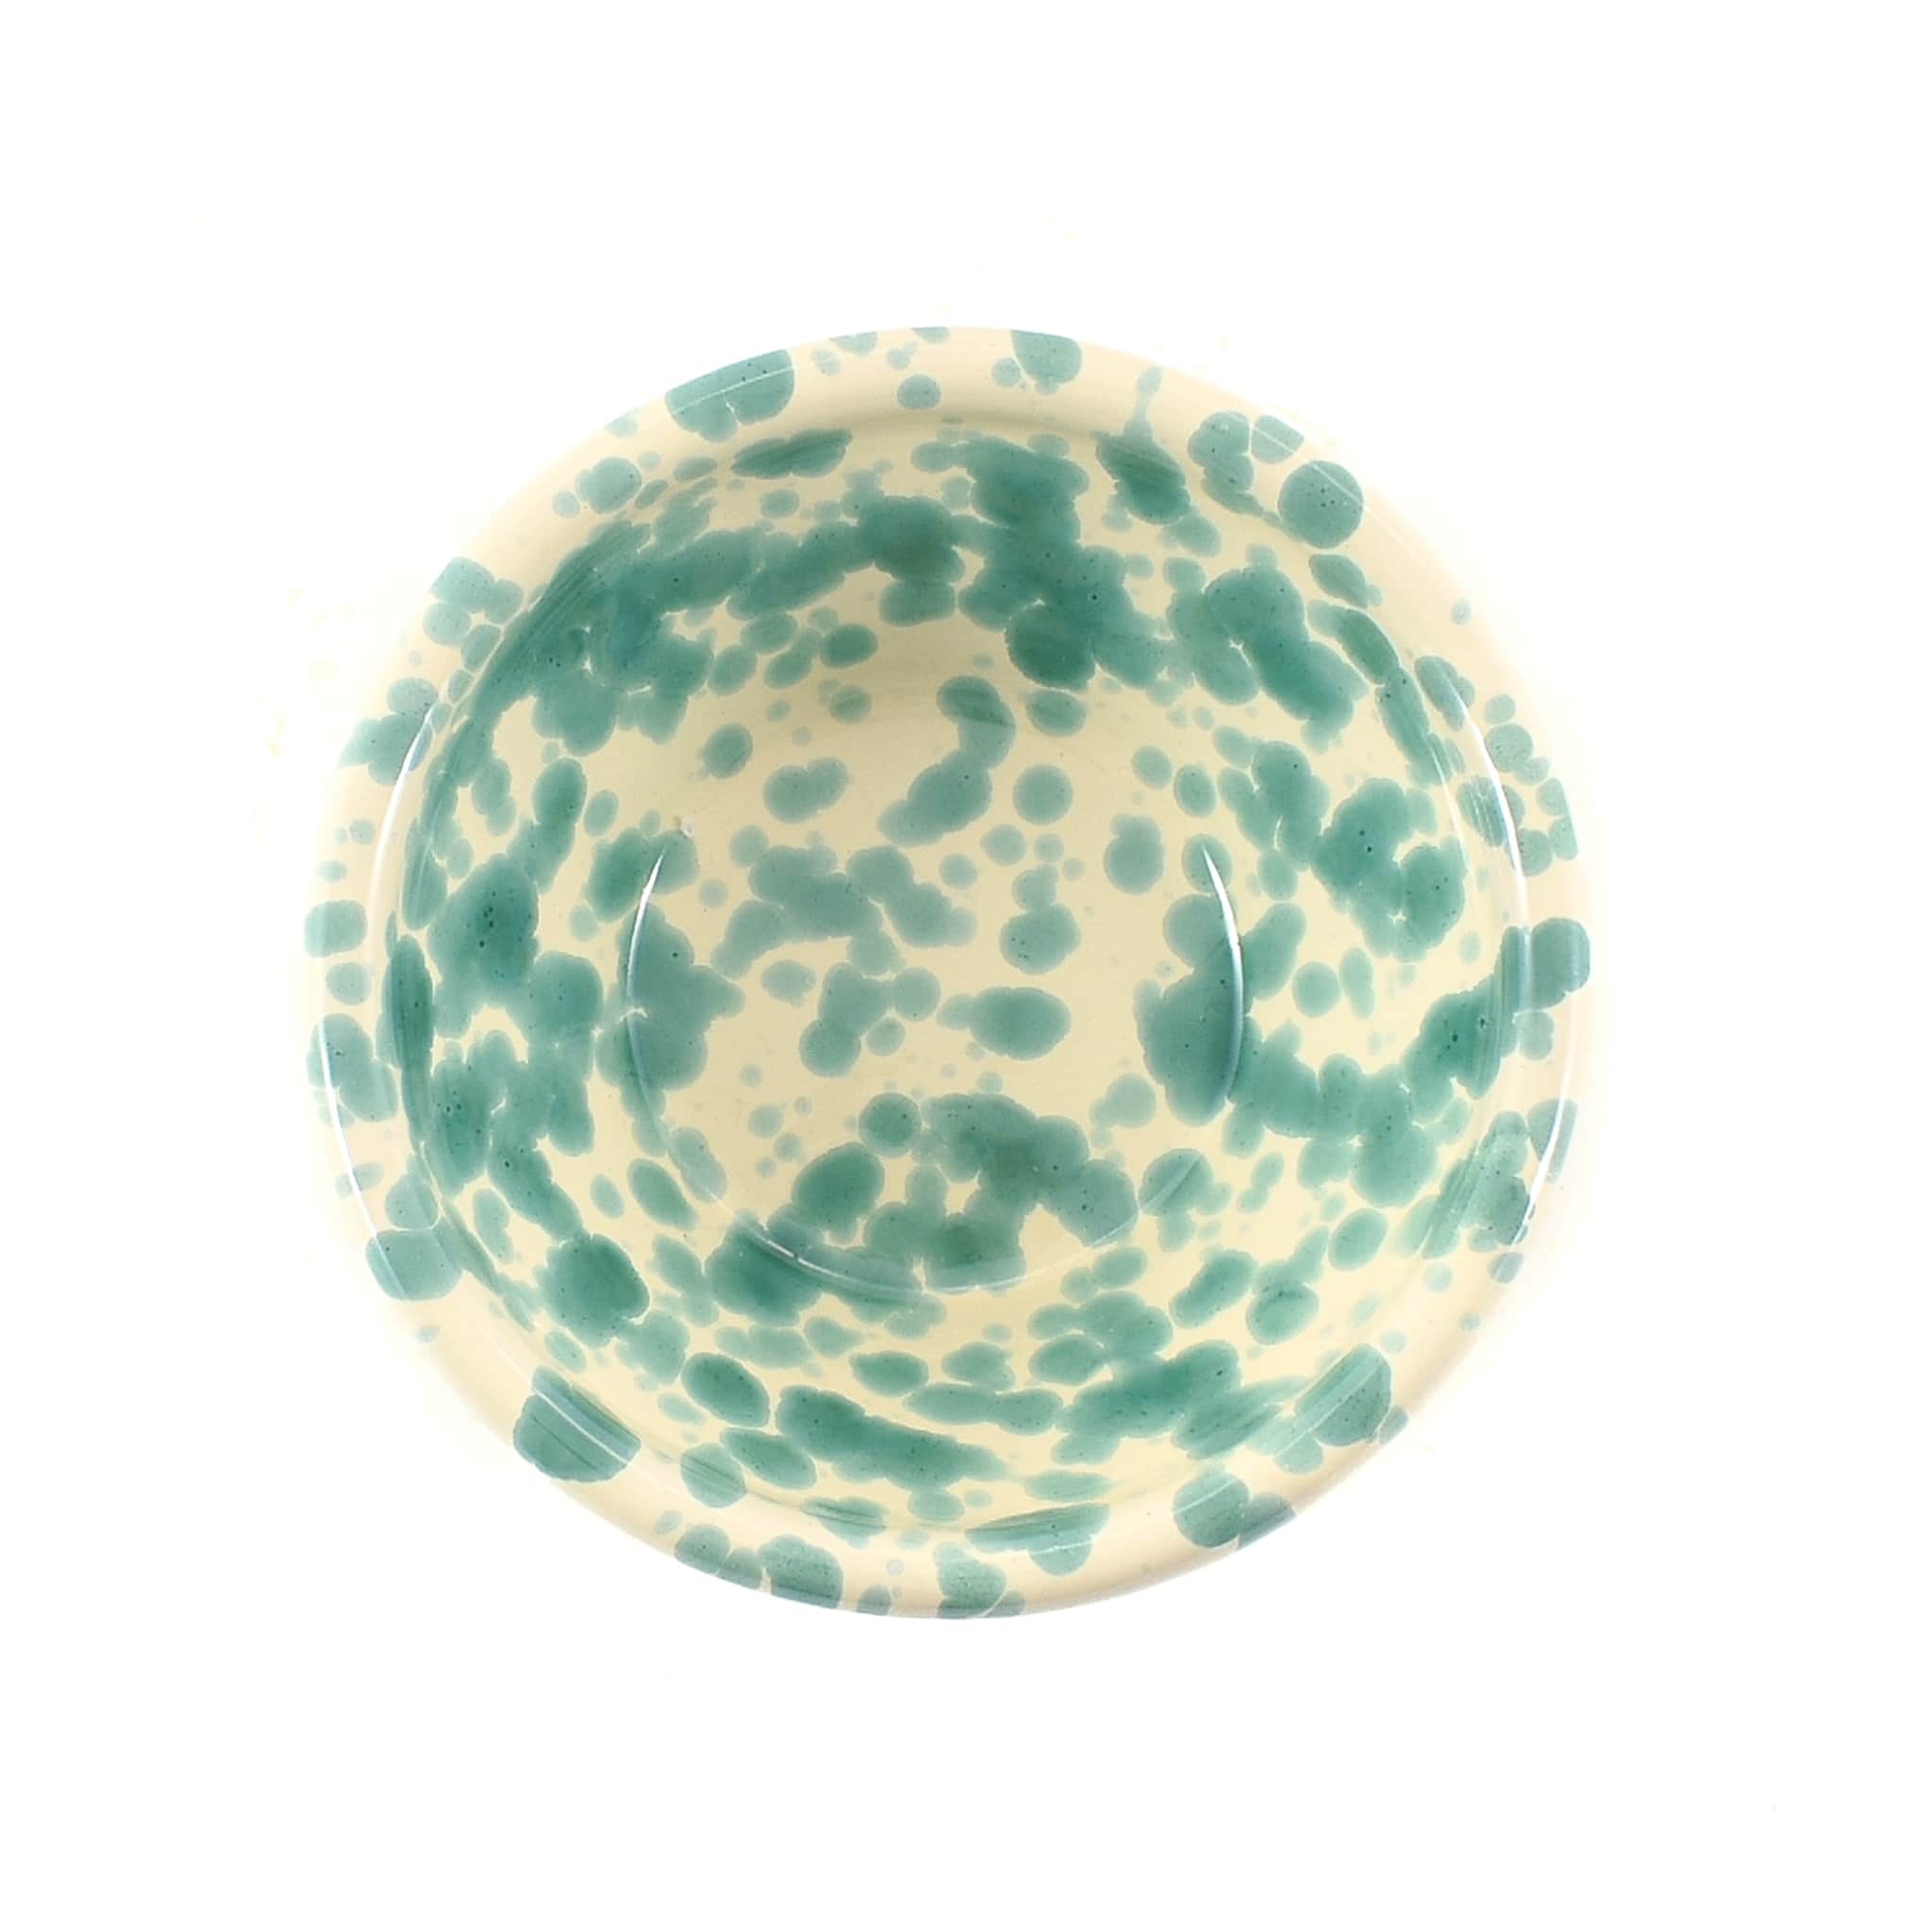 Puglia Aquamarine Splatter Bowl 12cm overhead